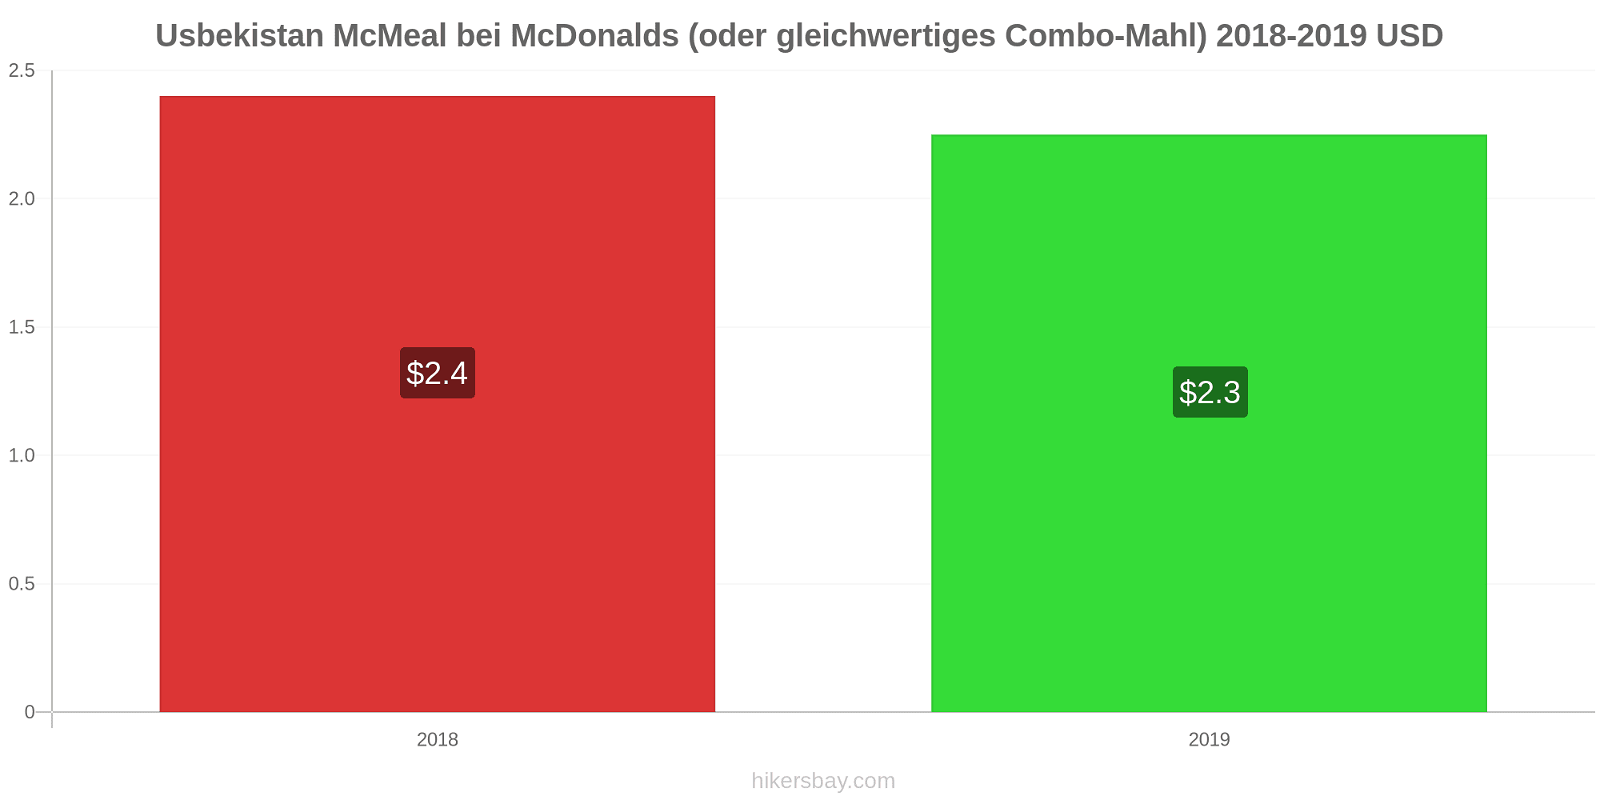 Usbekistan Preisänderungen McMeal bei McDonalds (oder gleichwertige Combo Meal) hikersbay.com